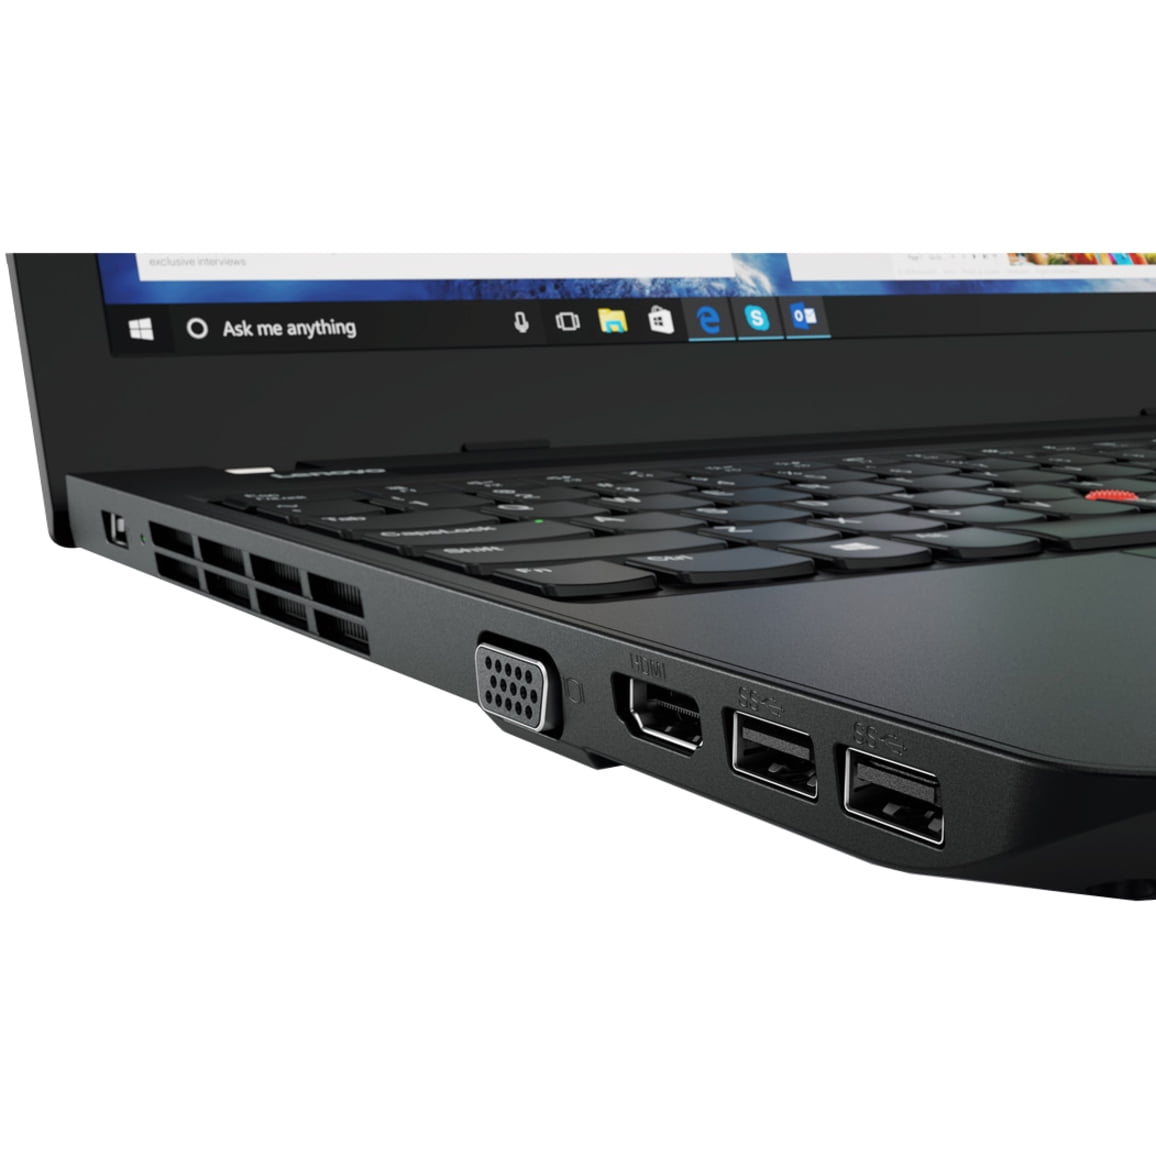 Lenovo ThinkPad E570 - 15.6